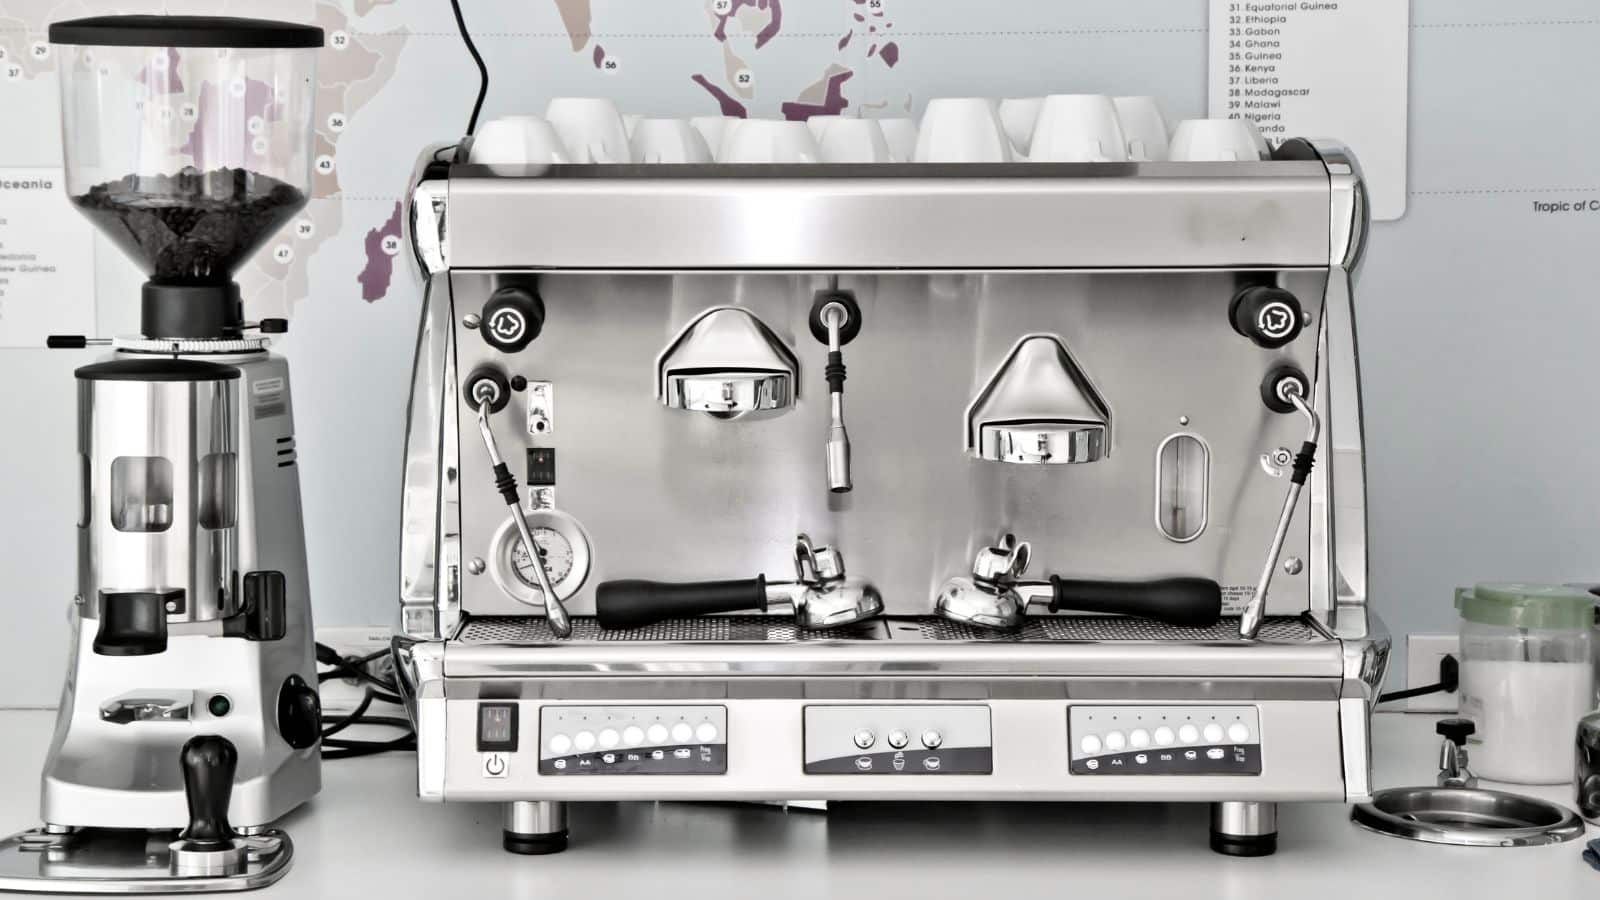 Espresso machine and coffee grinder.
